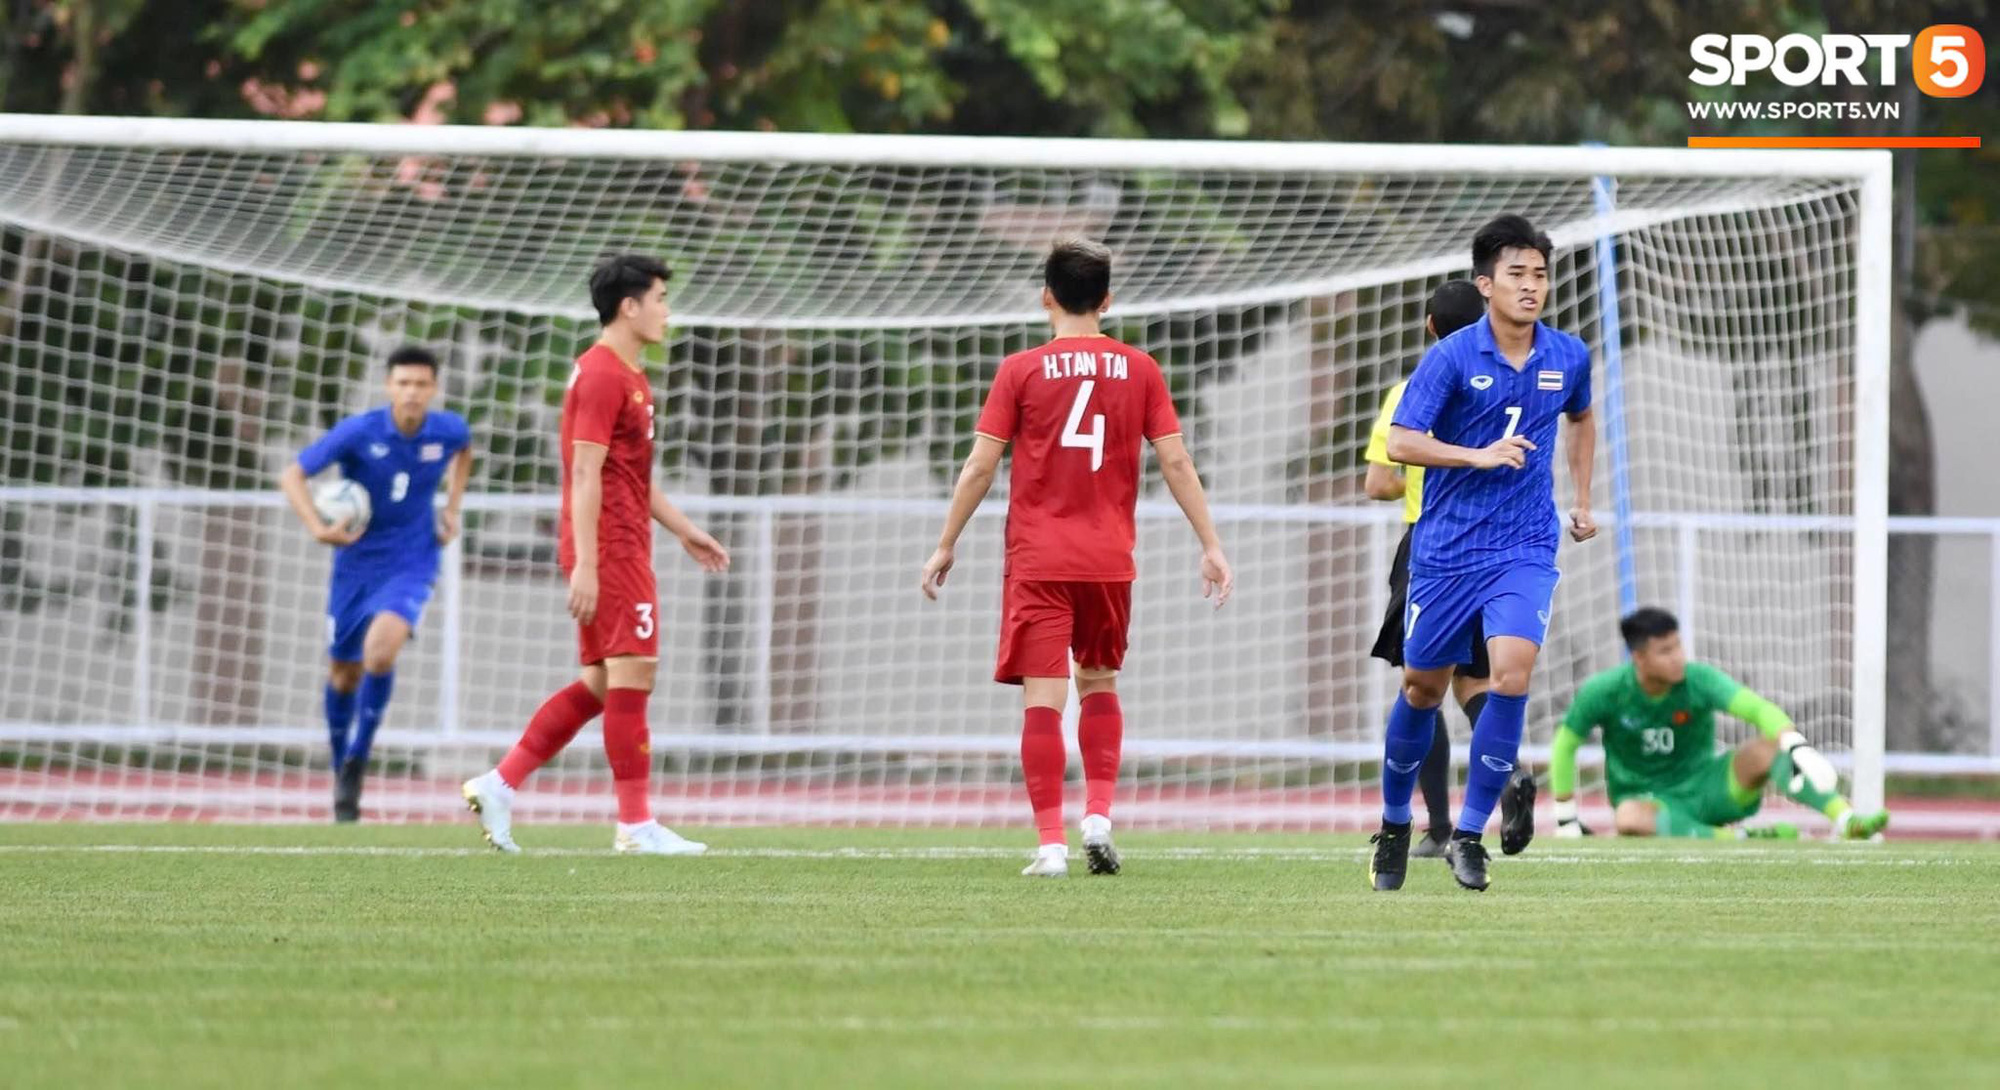 Tỷ số hòa 2-2 giúp Việt Nam giành thêm nhiều lợi thế trước trận bán kết SEA Games 2019 - Ảnh 2.